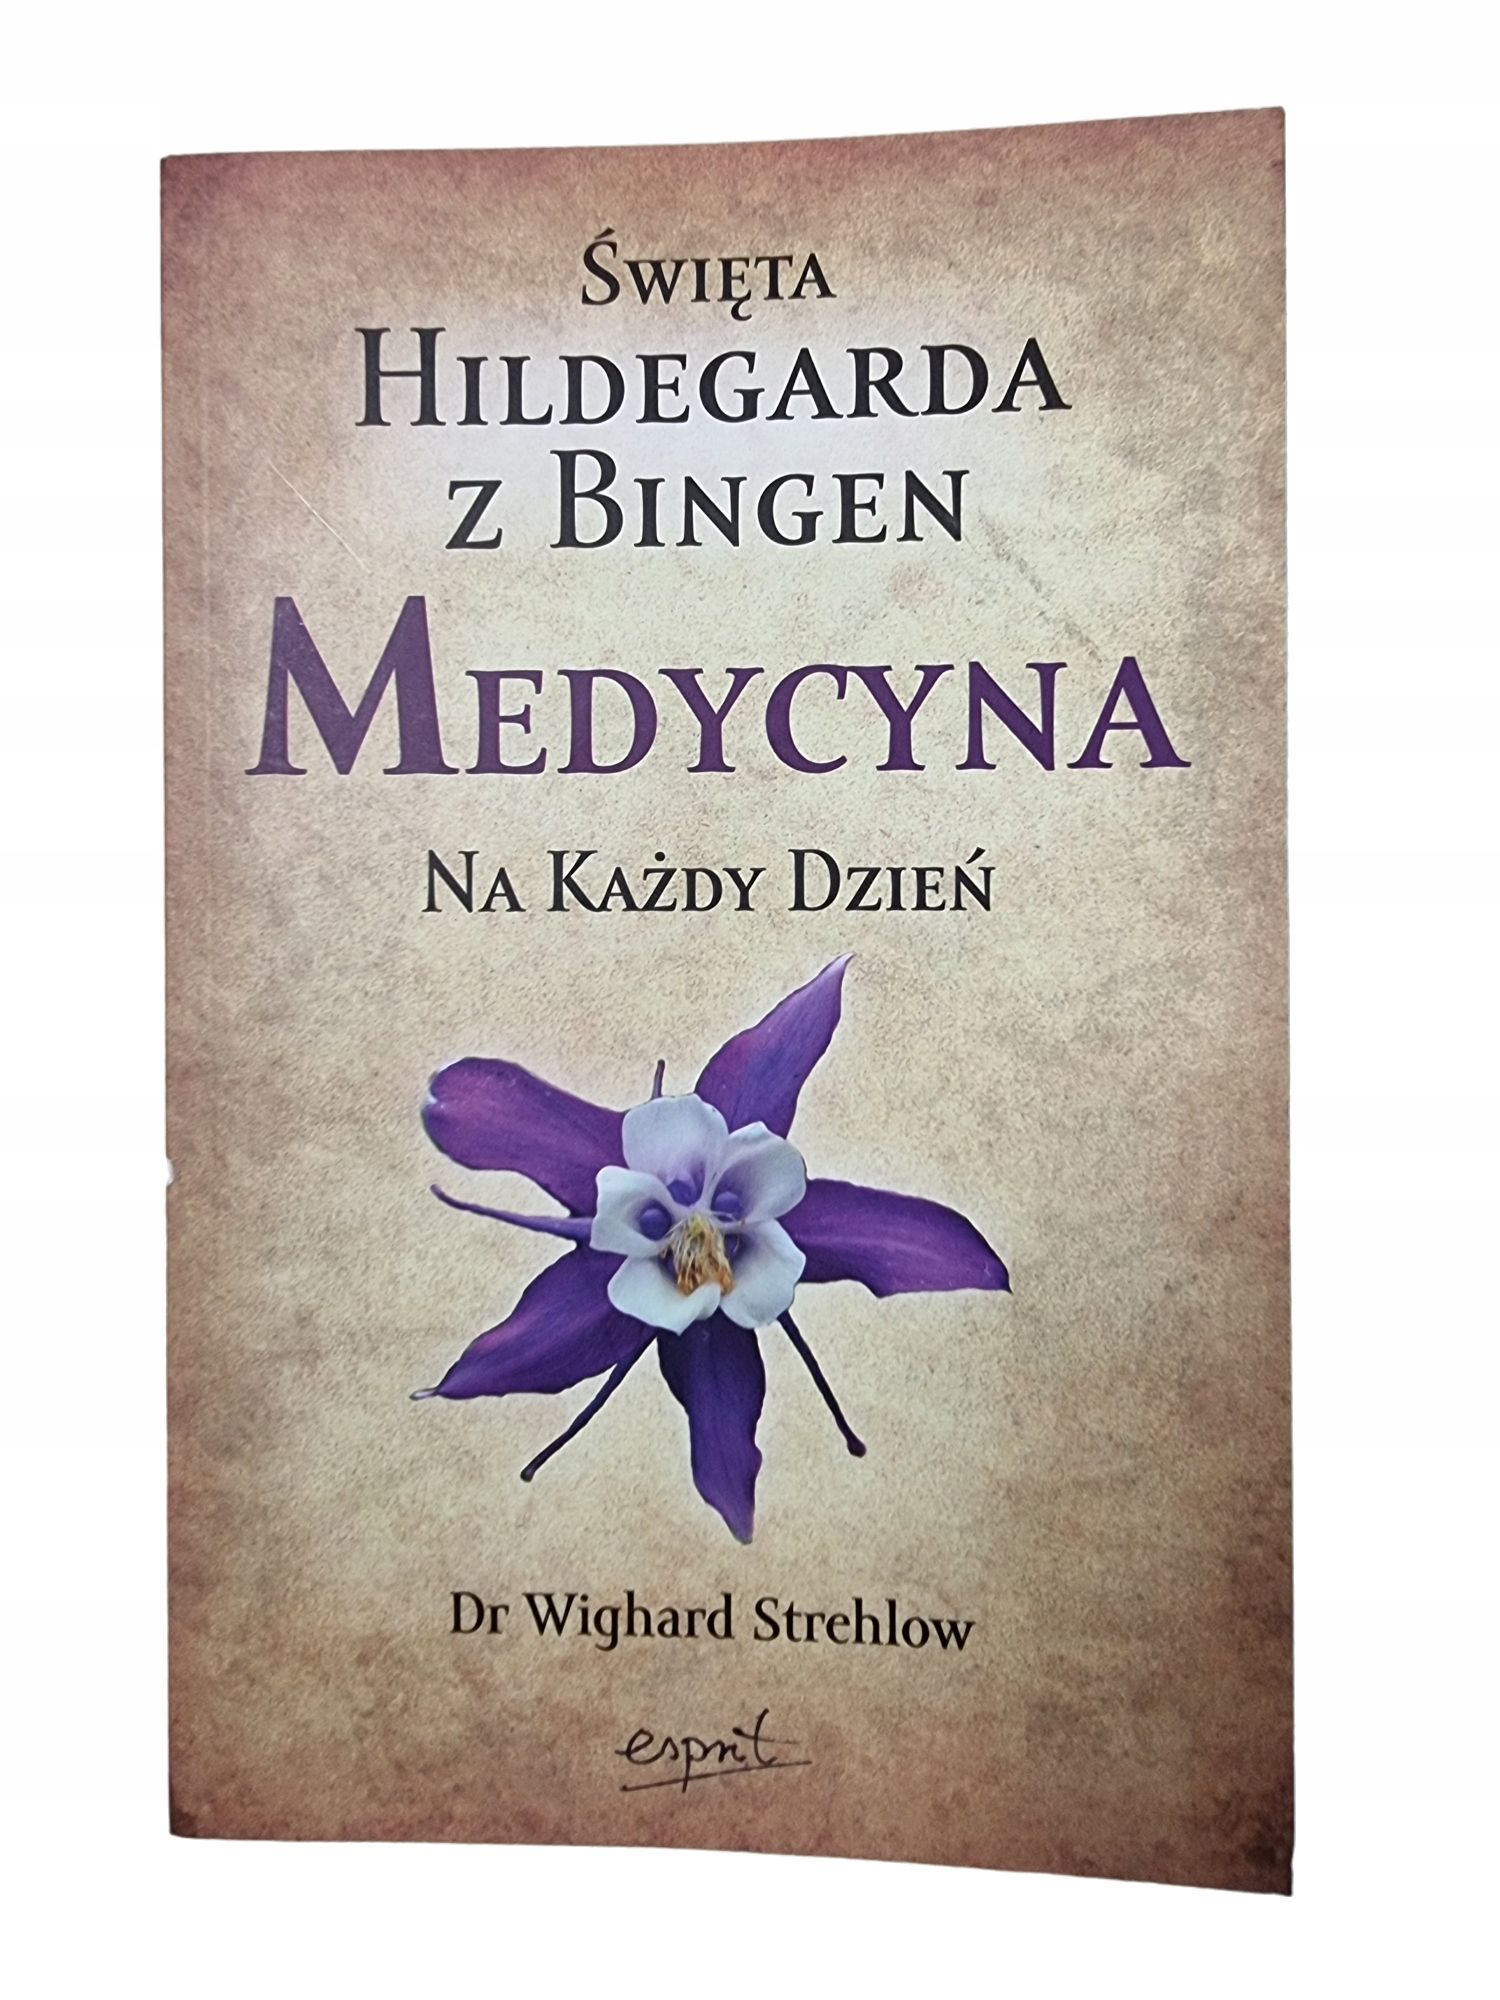 Święta Hildegarda z Bingen Medycyna na Każdy Dzień / Strehlow